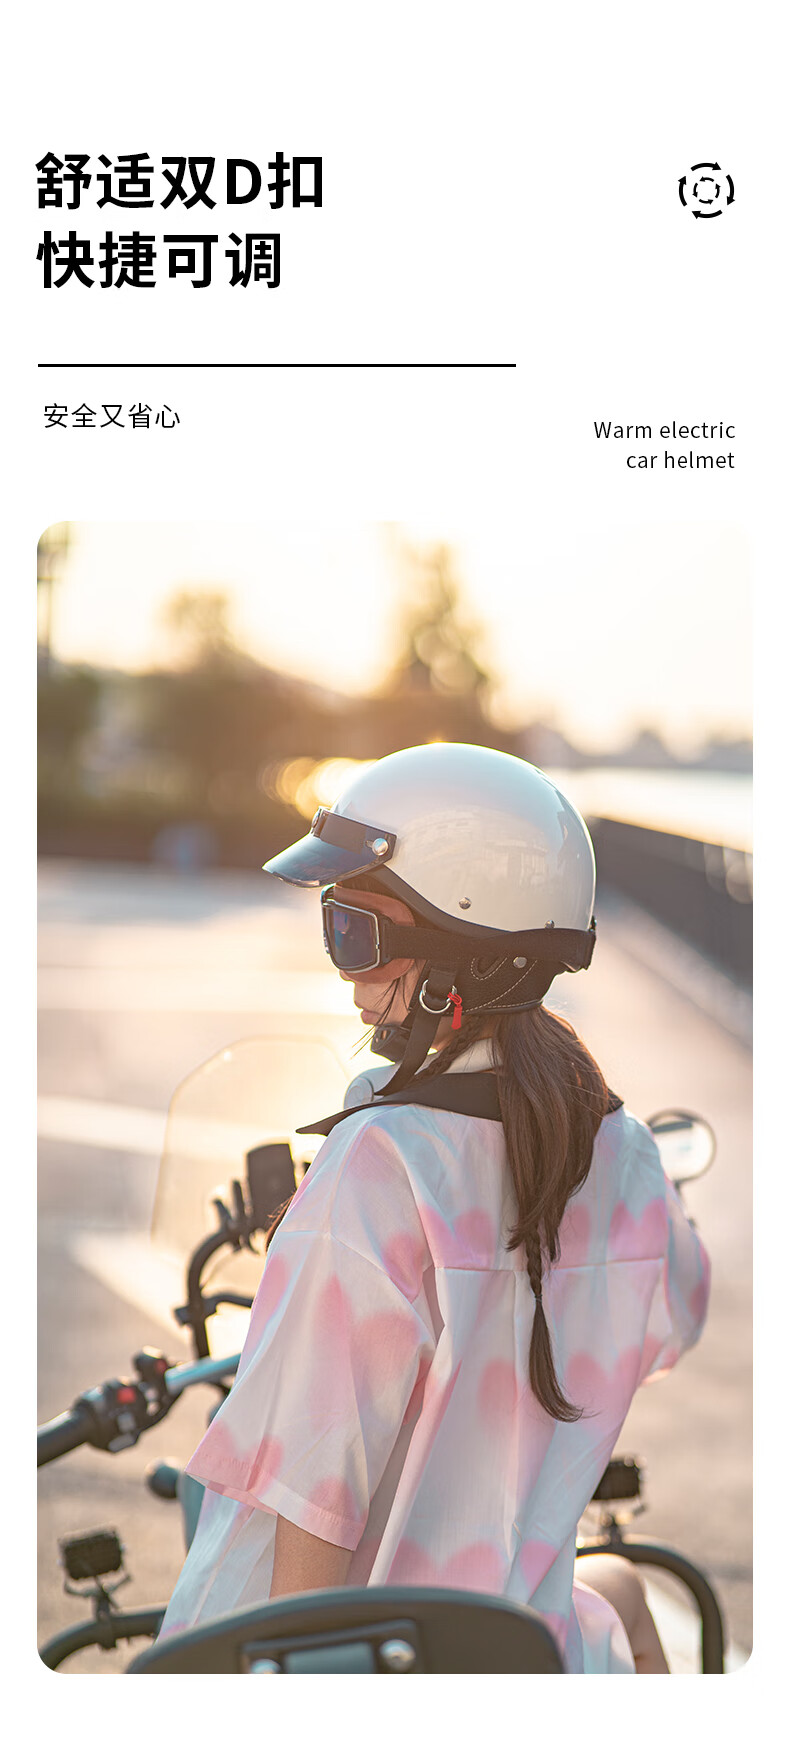 飚速帝品BSDDP 3C认证头盔摩托车电动车头盔男女四季通用复古哈雷盔安全帽MT-2米白XL码